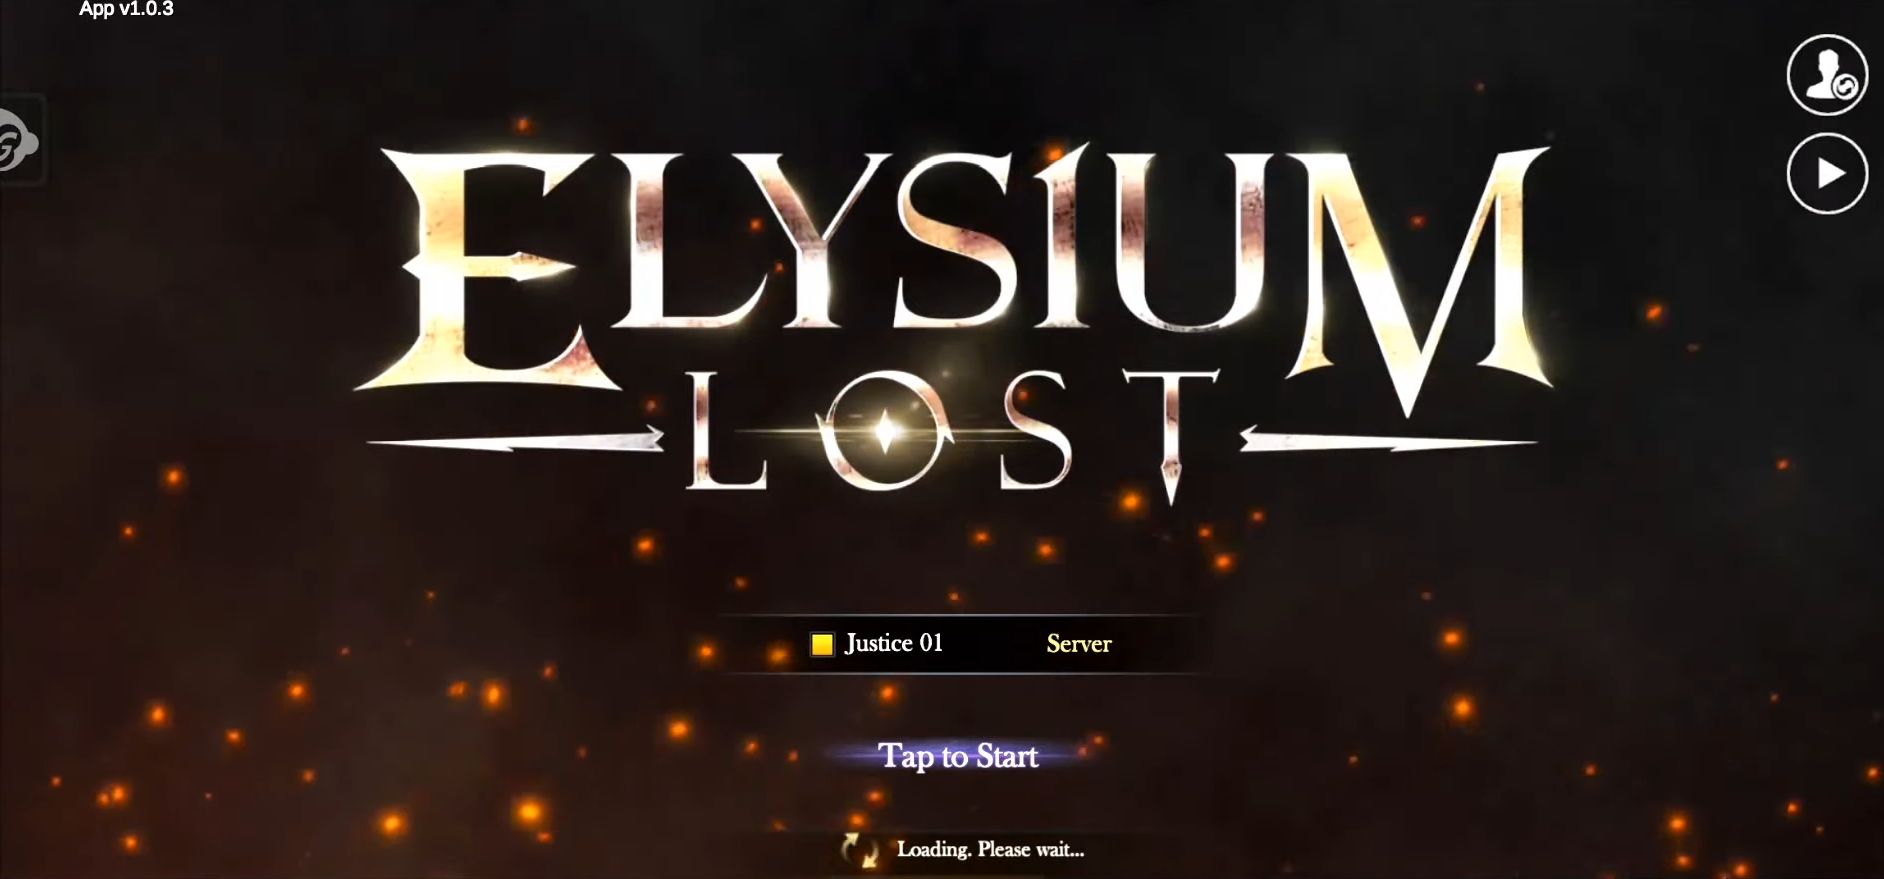 Descargar Elysium Lost gratis para Android.